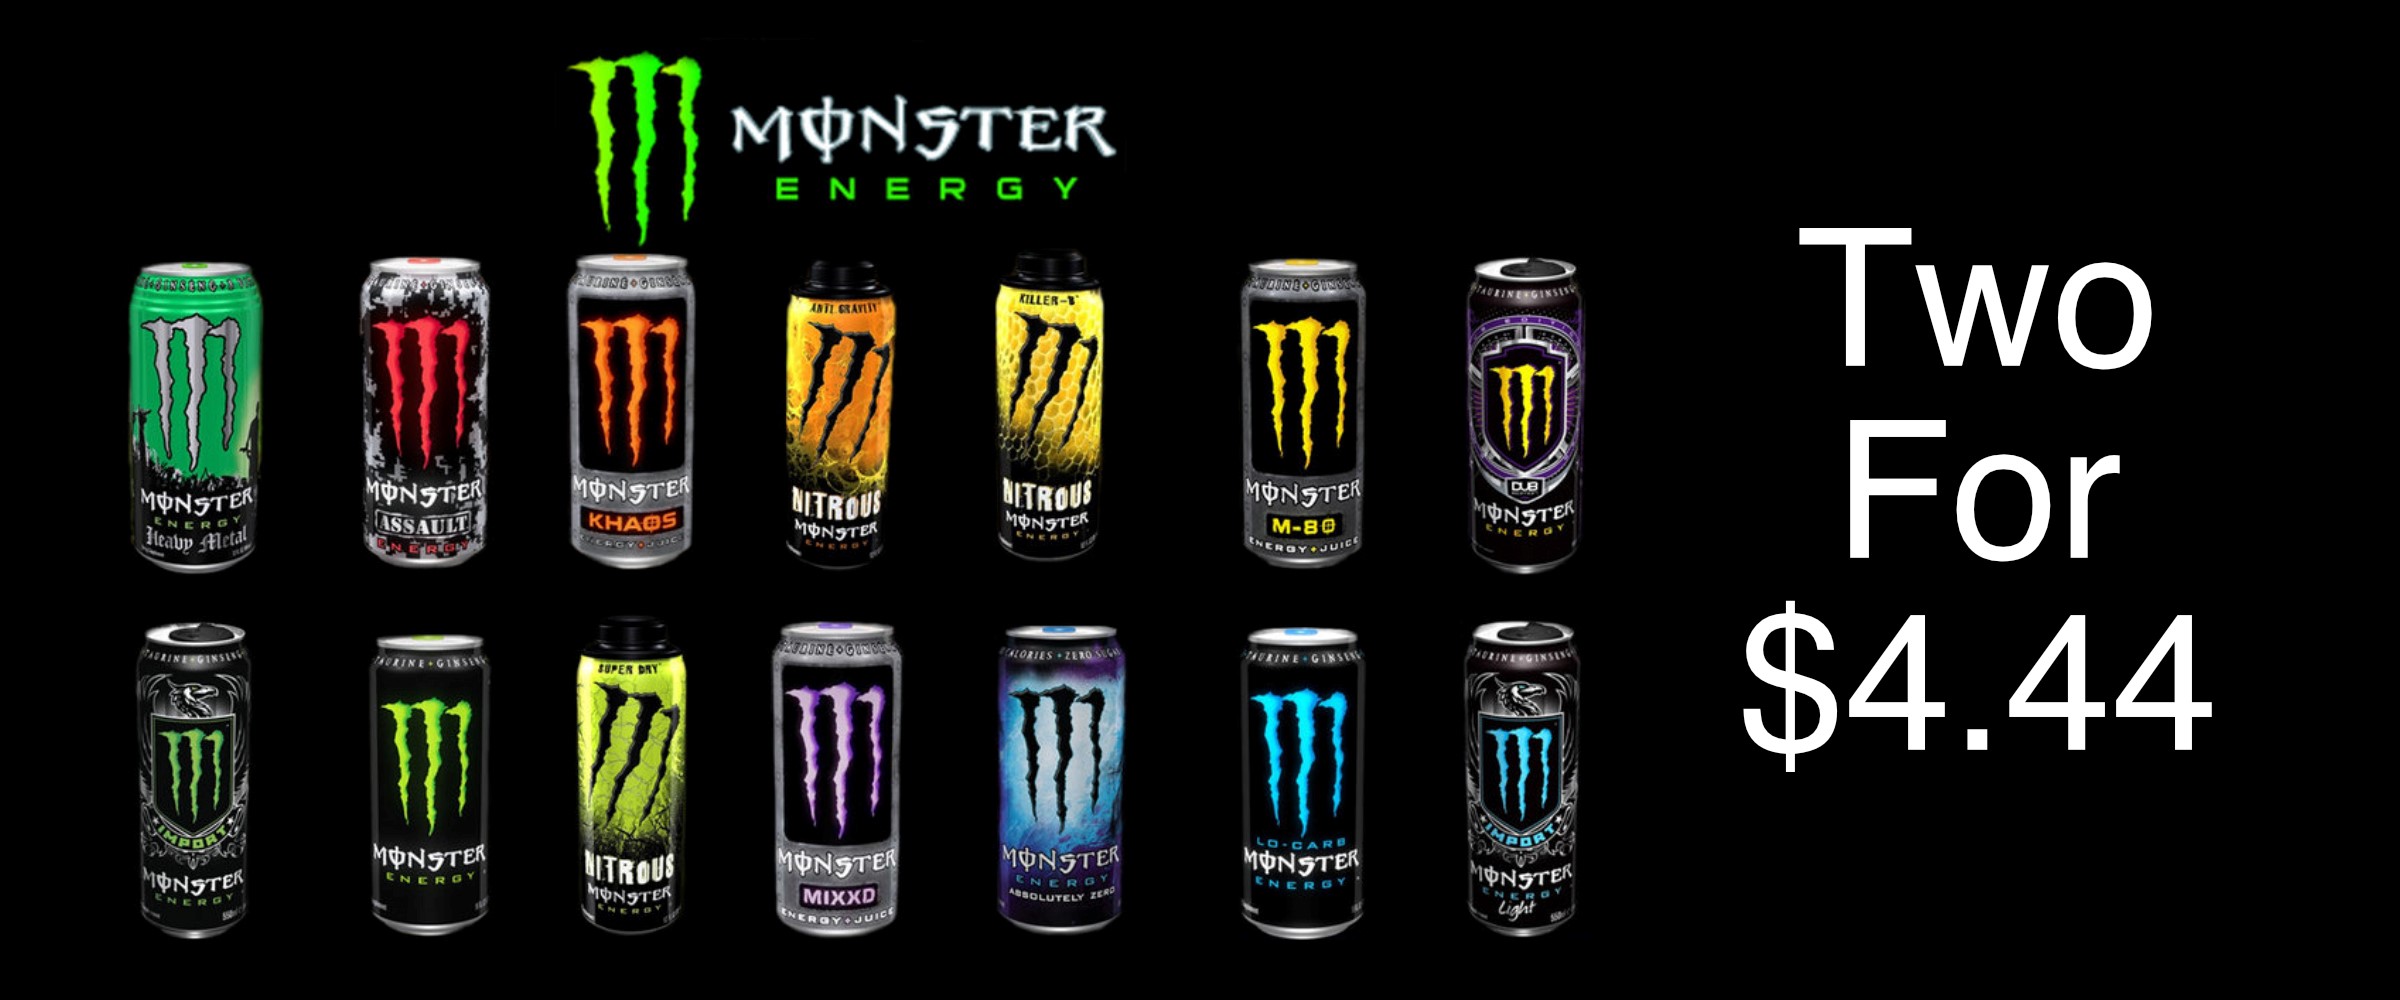 Monster Energy - 2 for $4.44